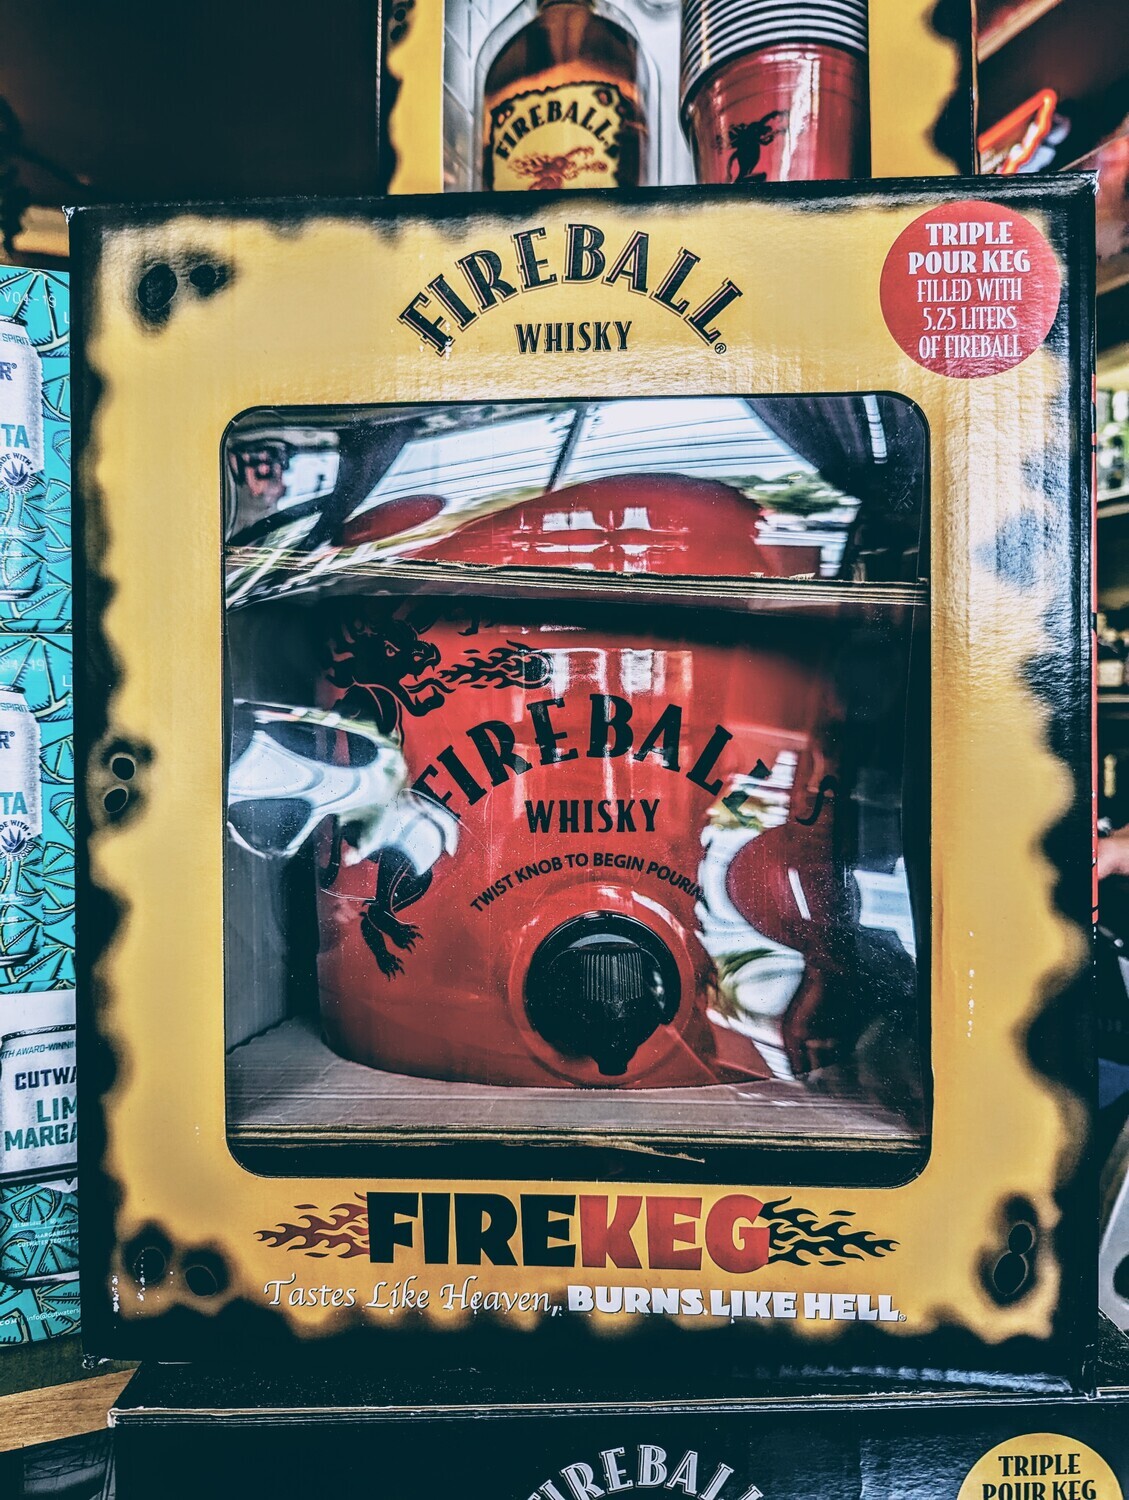 Fireball 5.25 Liter Firekeg